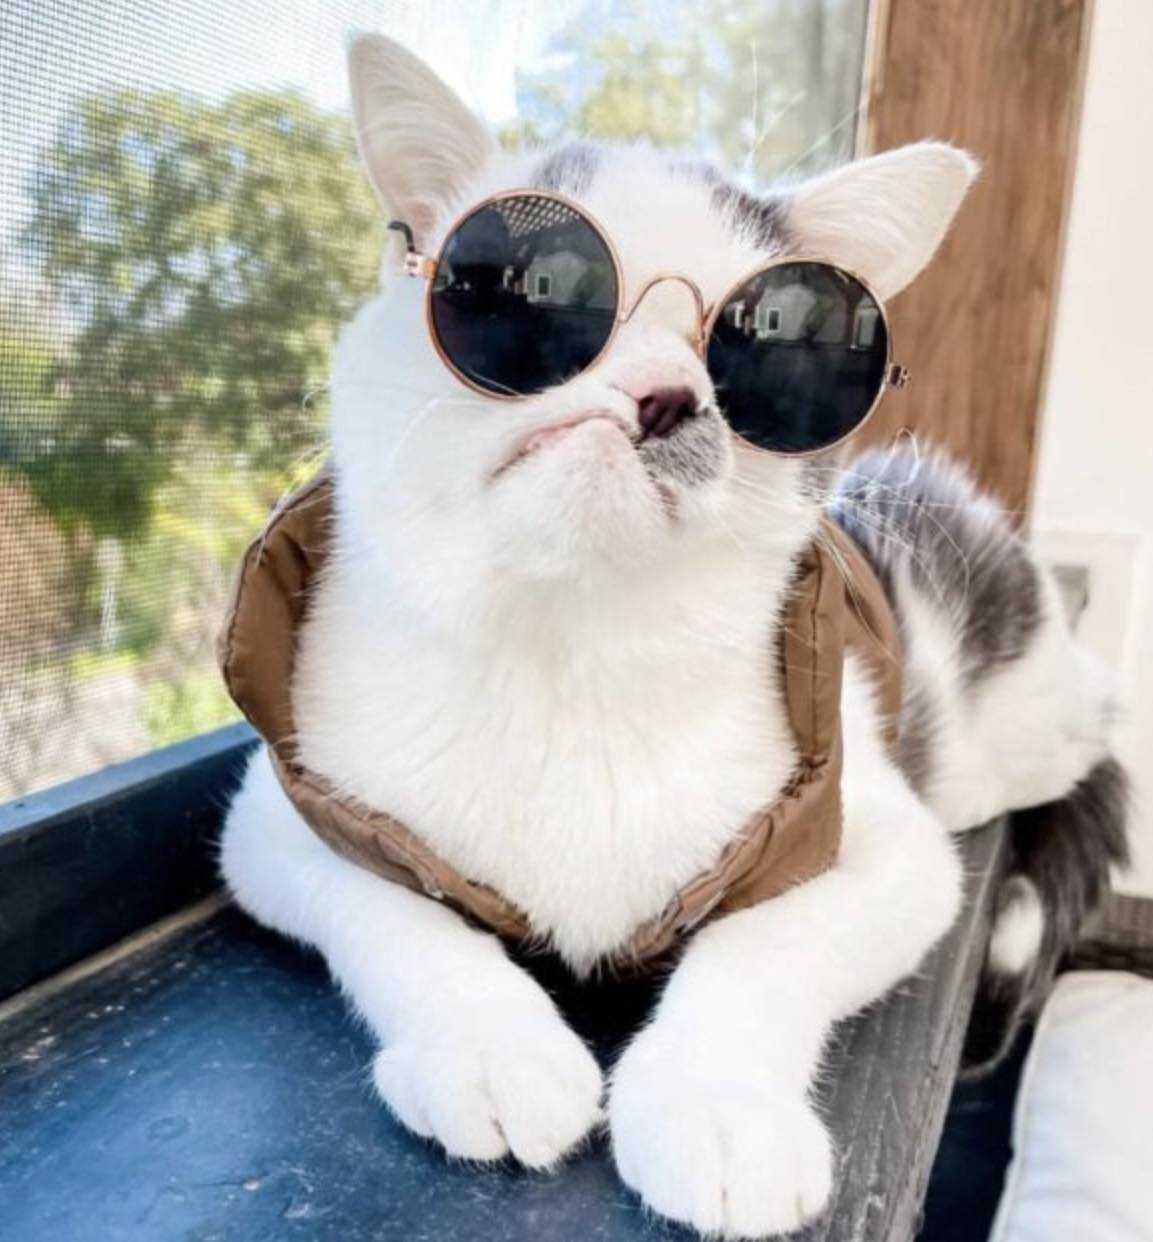 cat in glasses